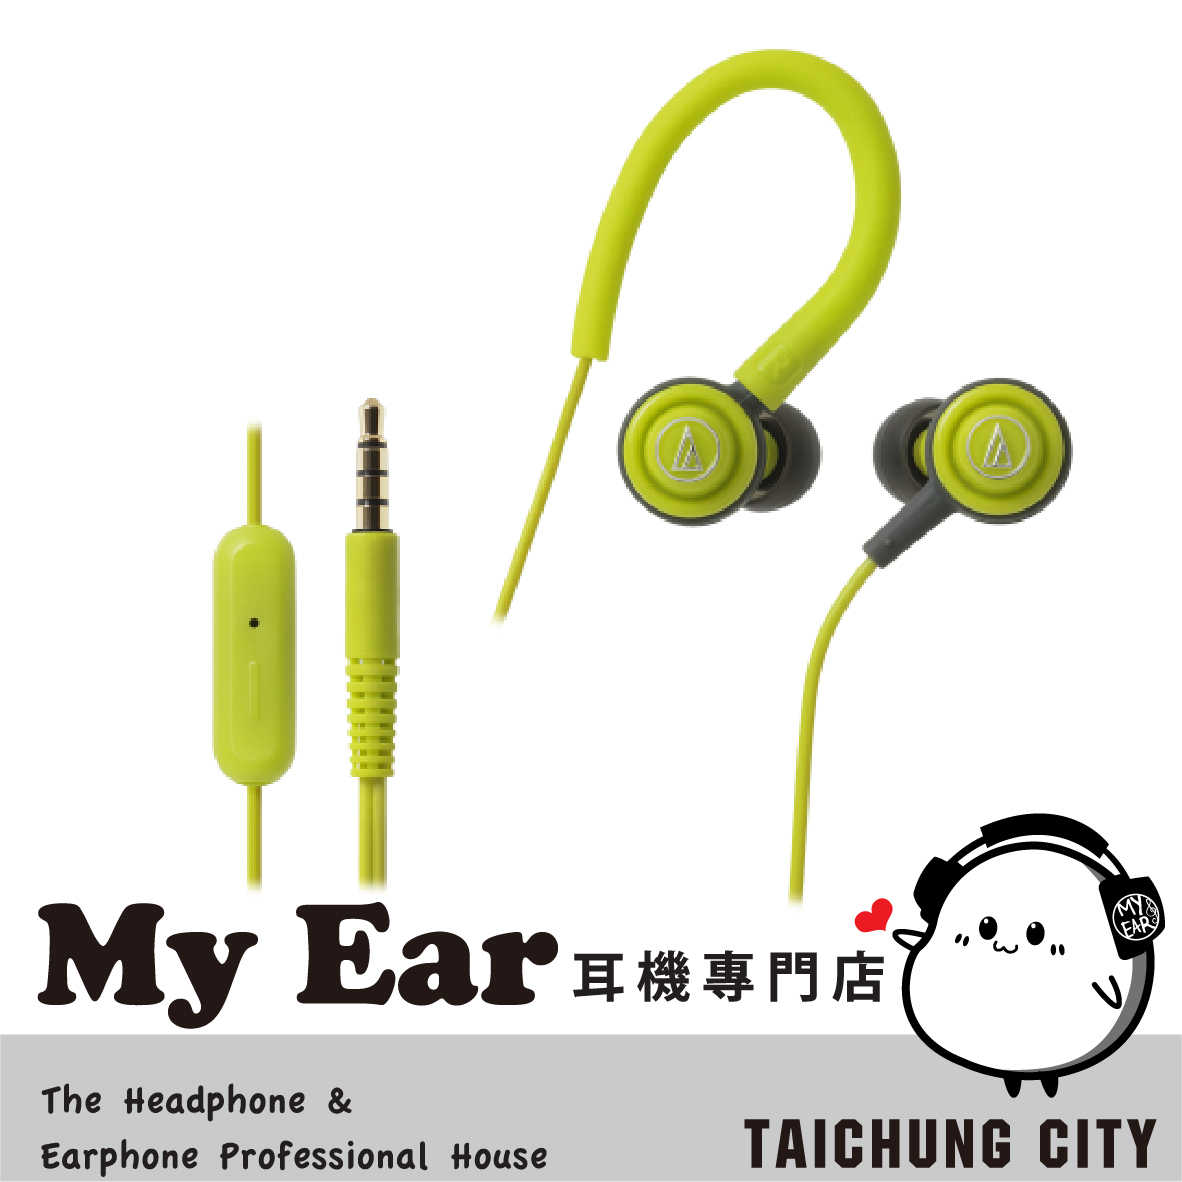 鐵三角 ATH-COR150iS 綠 可通話 線控 耳道式耳機 Android iOS 適用 | My Ear耳機專門店